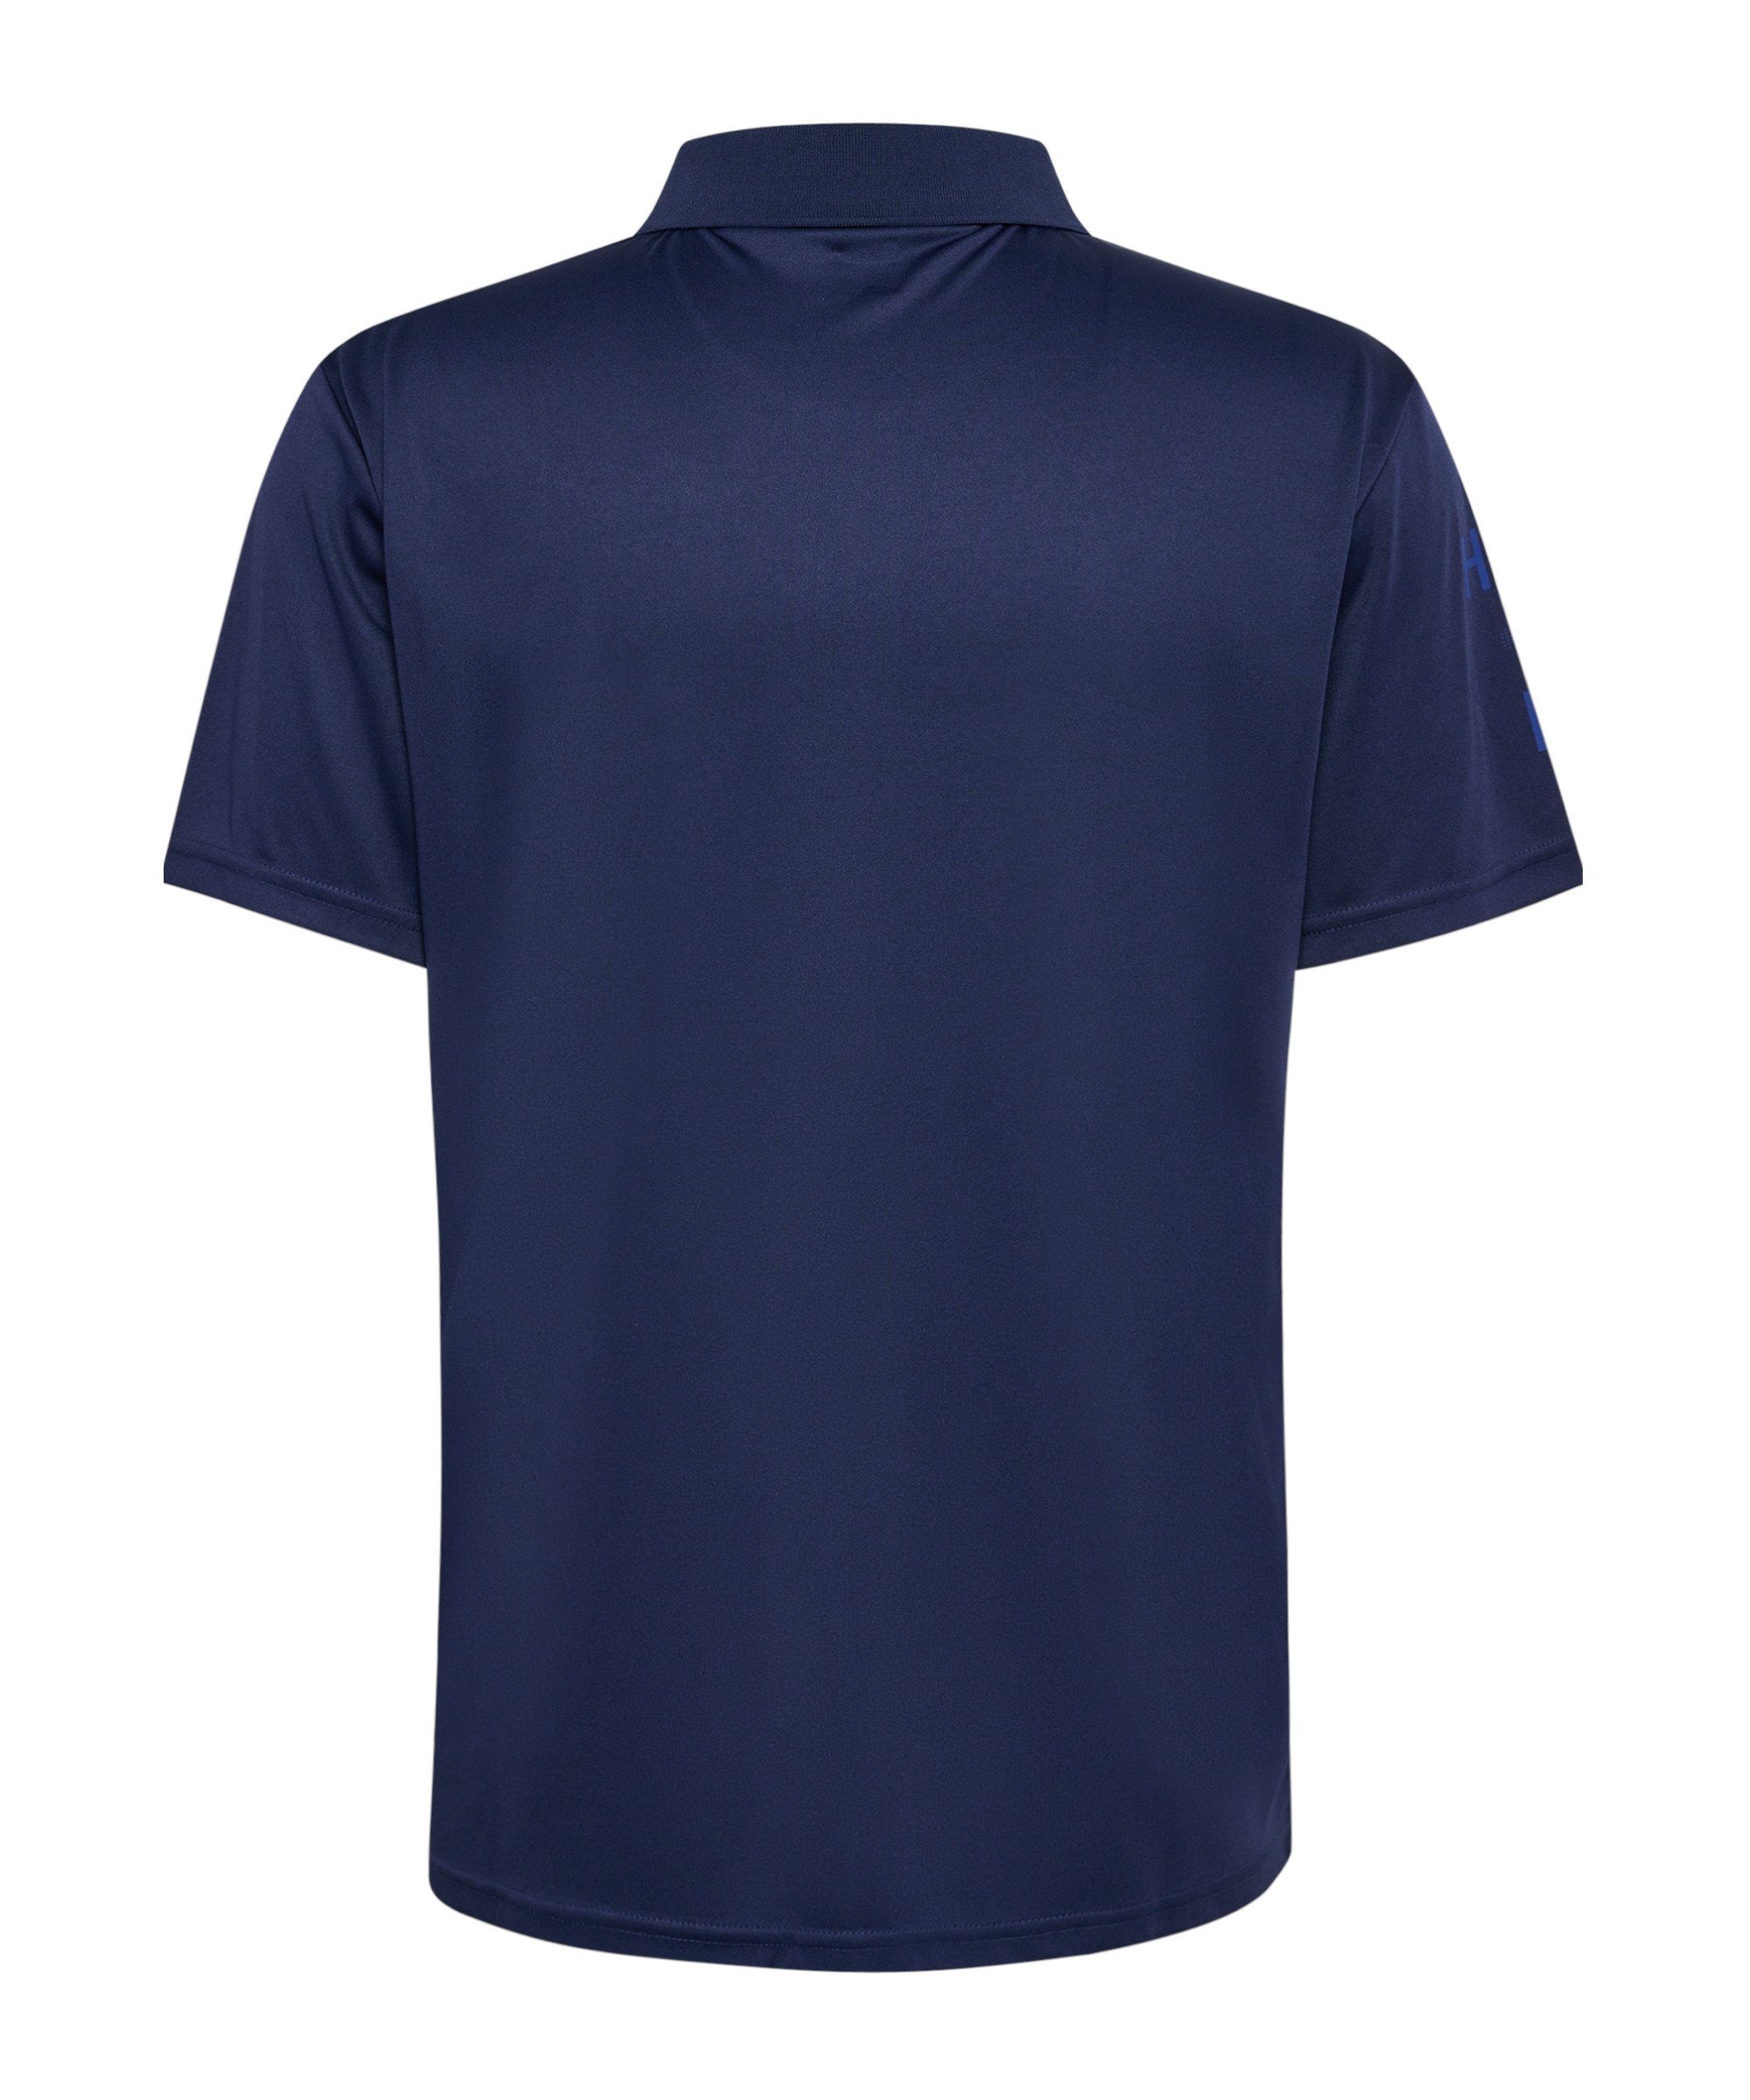 blau default T-Shirt hmlCOURT hummel Poloshirt